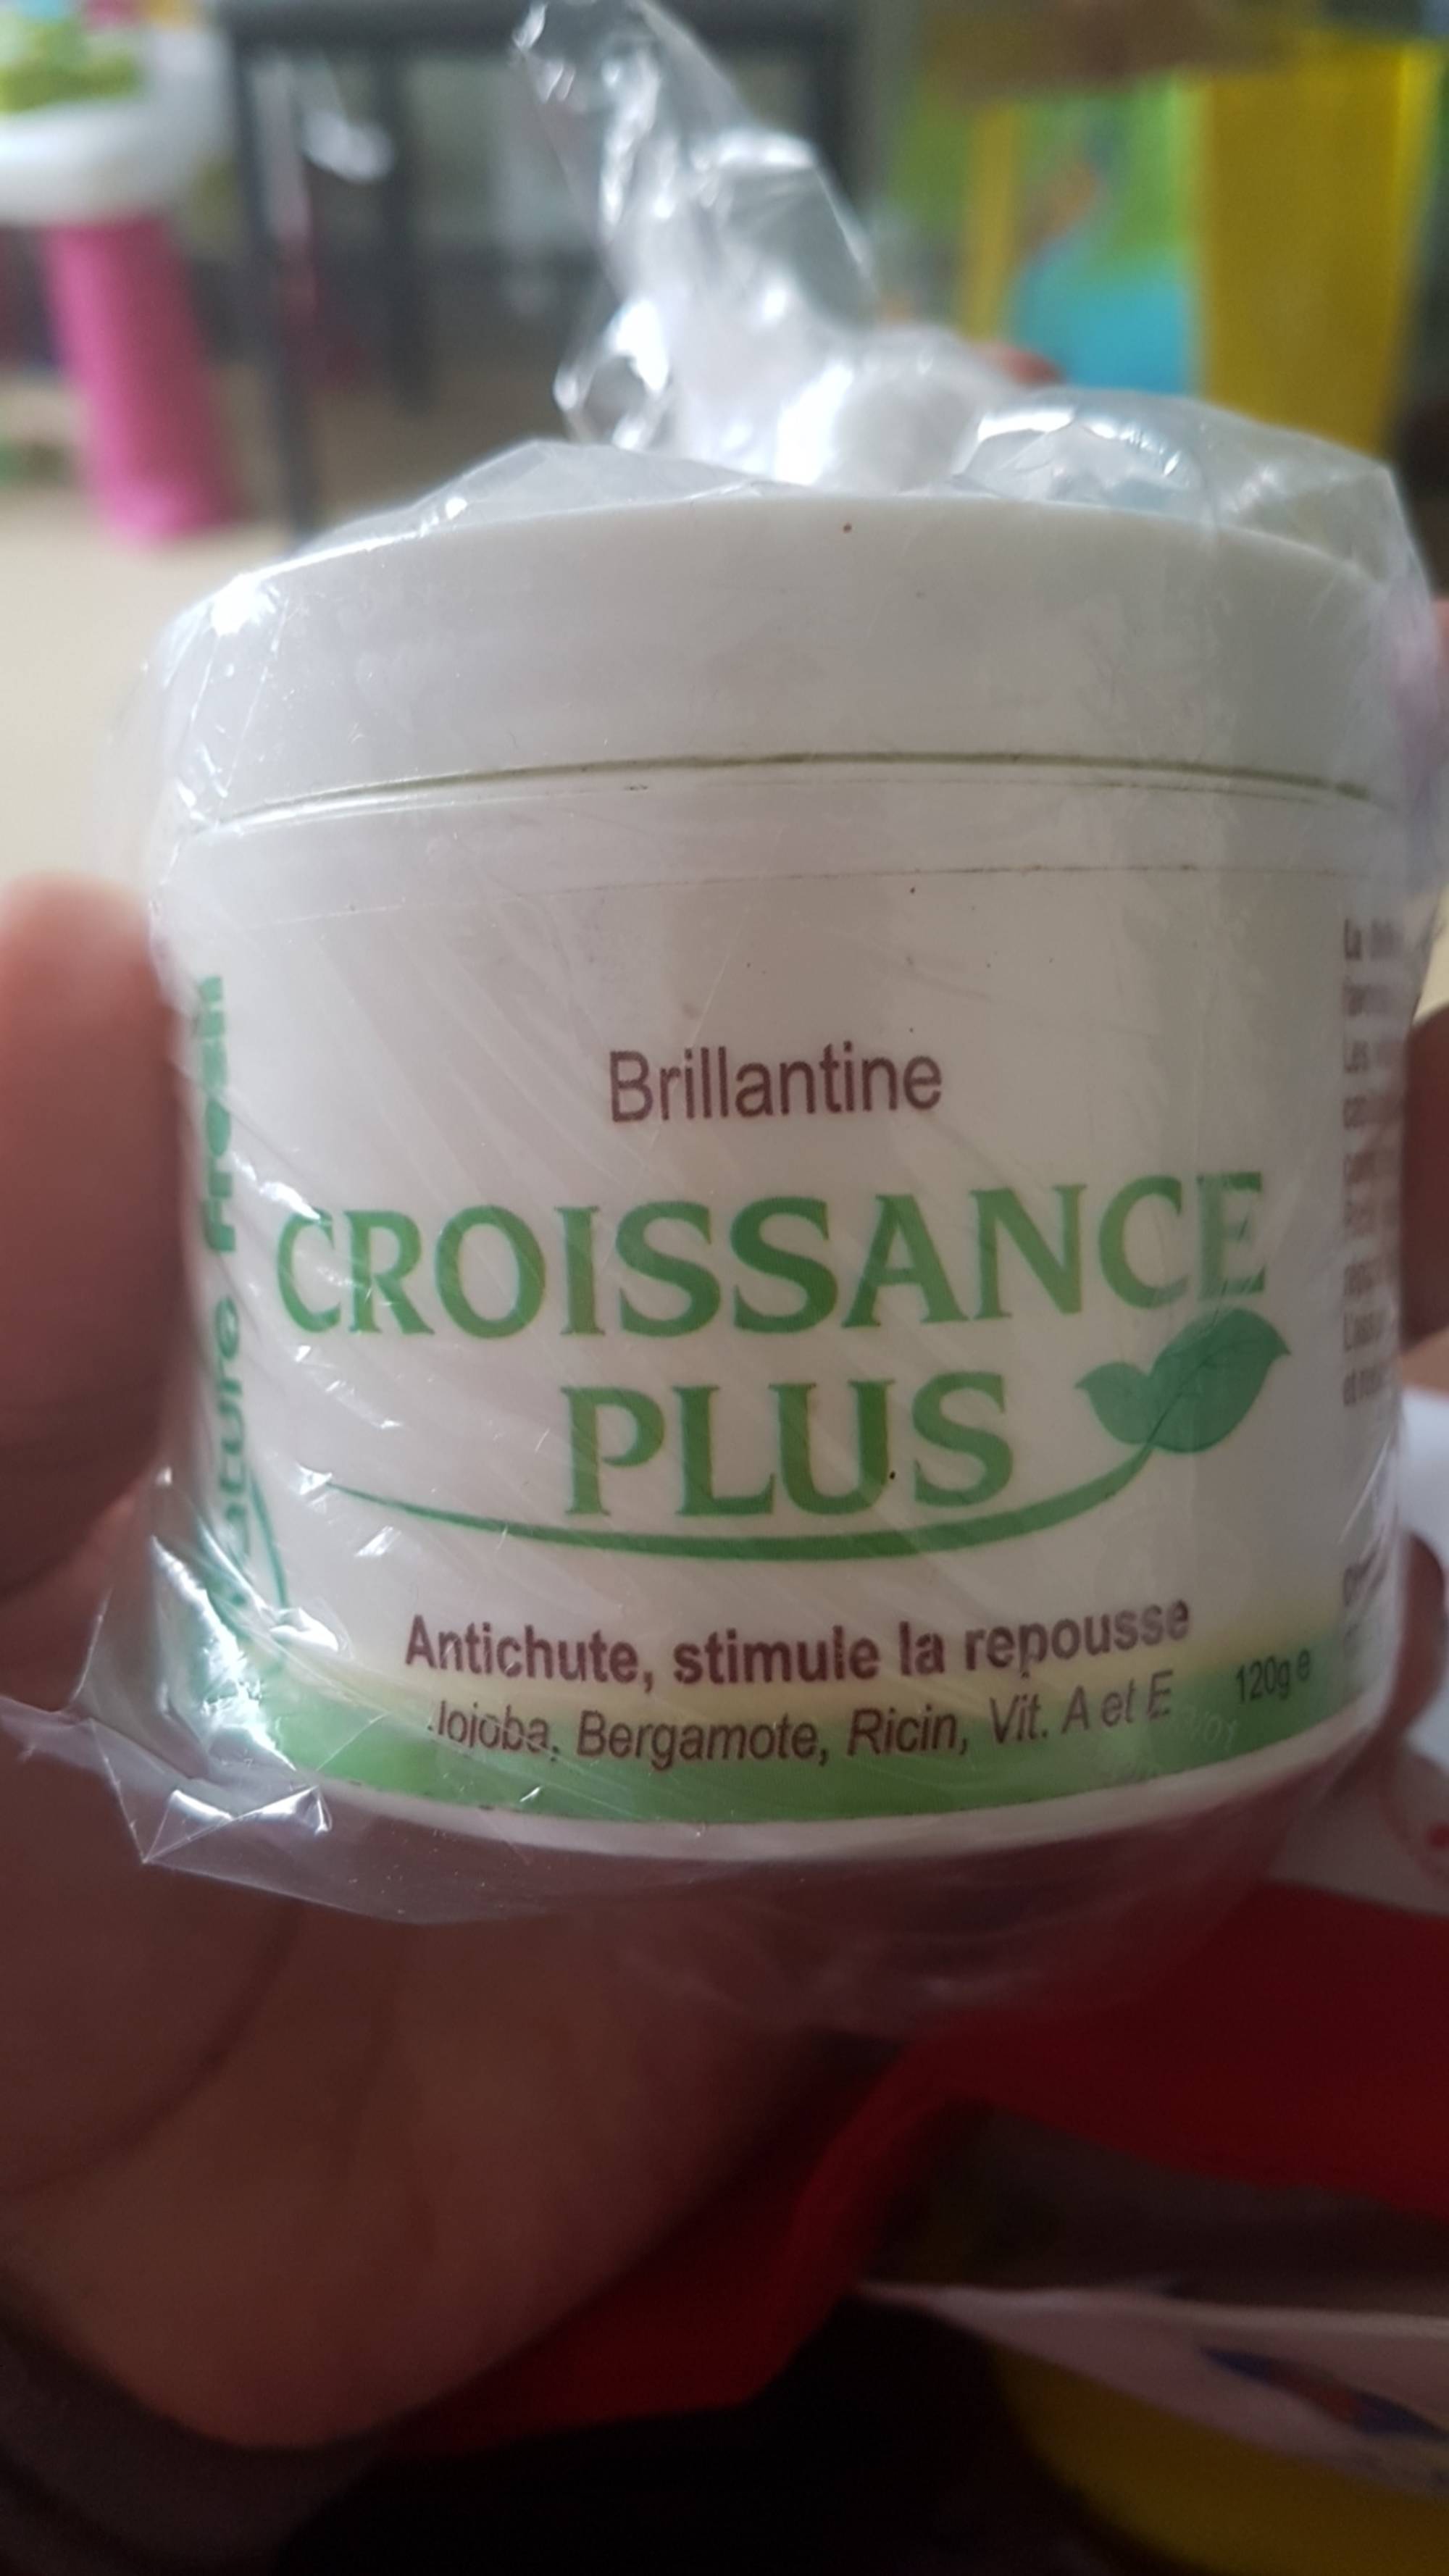 CROISSANCE PLUS - Brillantine - Antichute, stimule la repousse